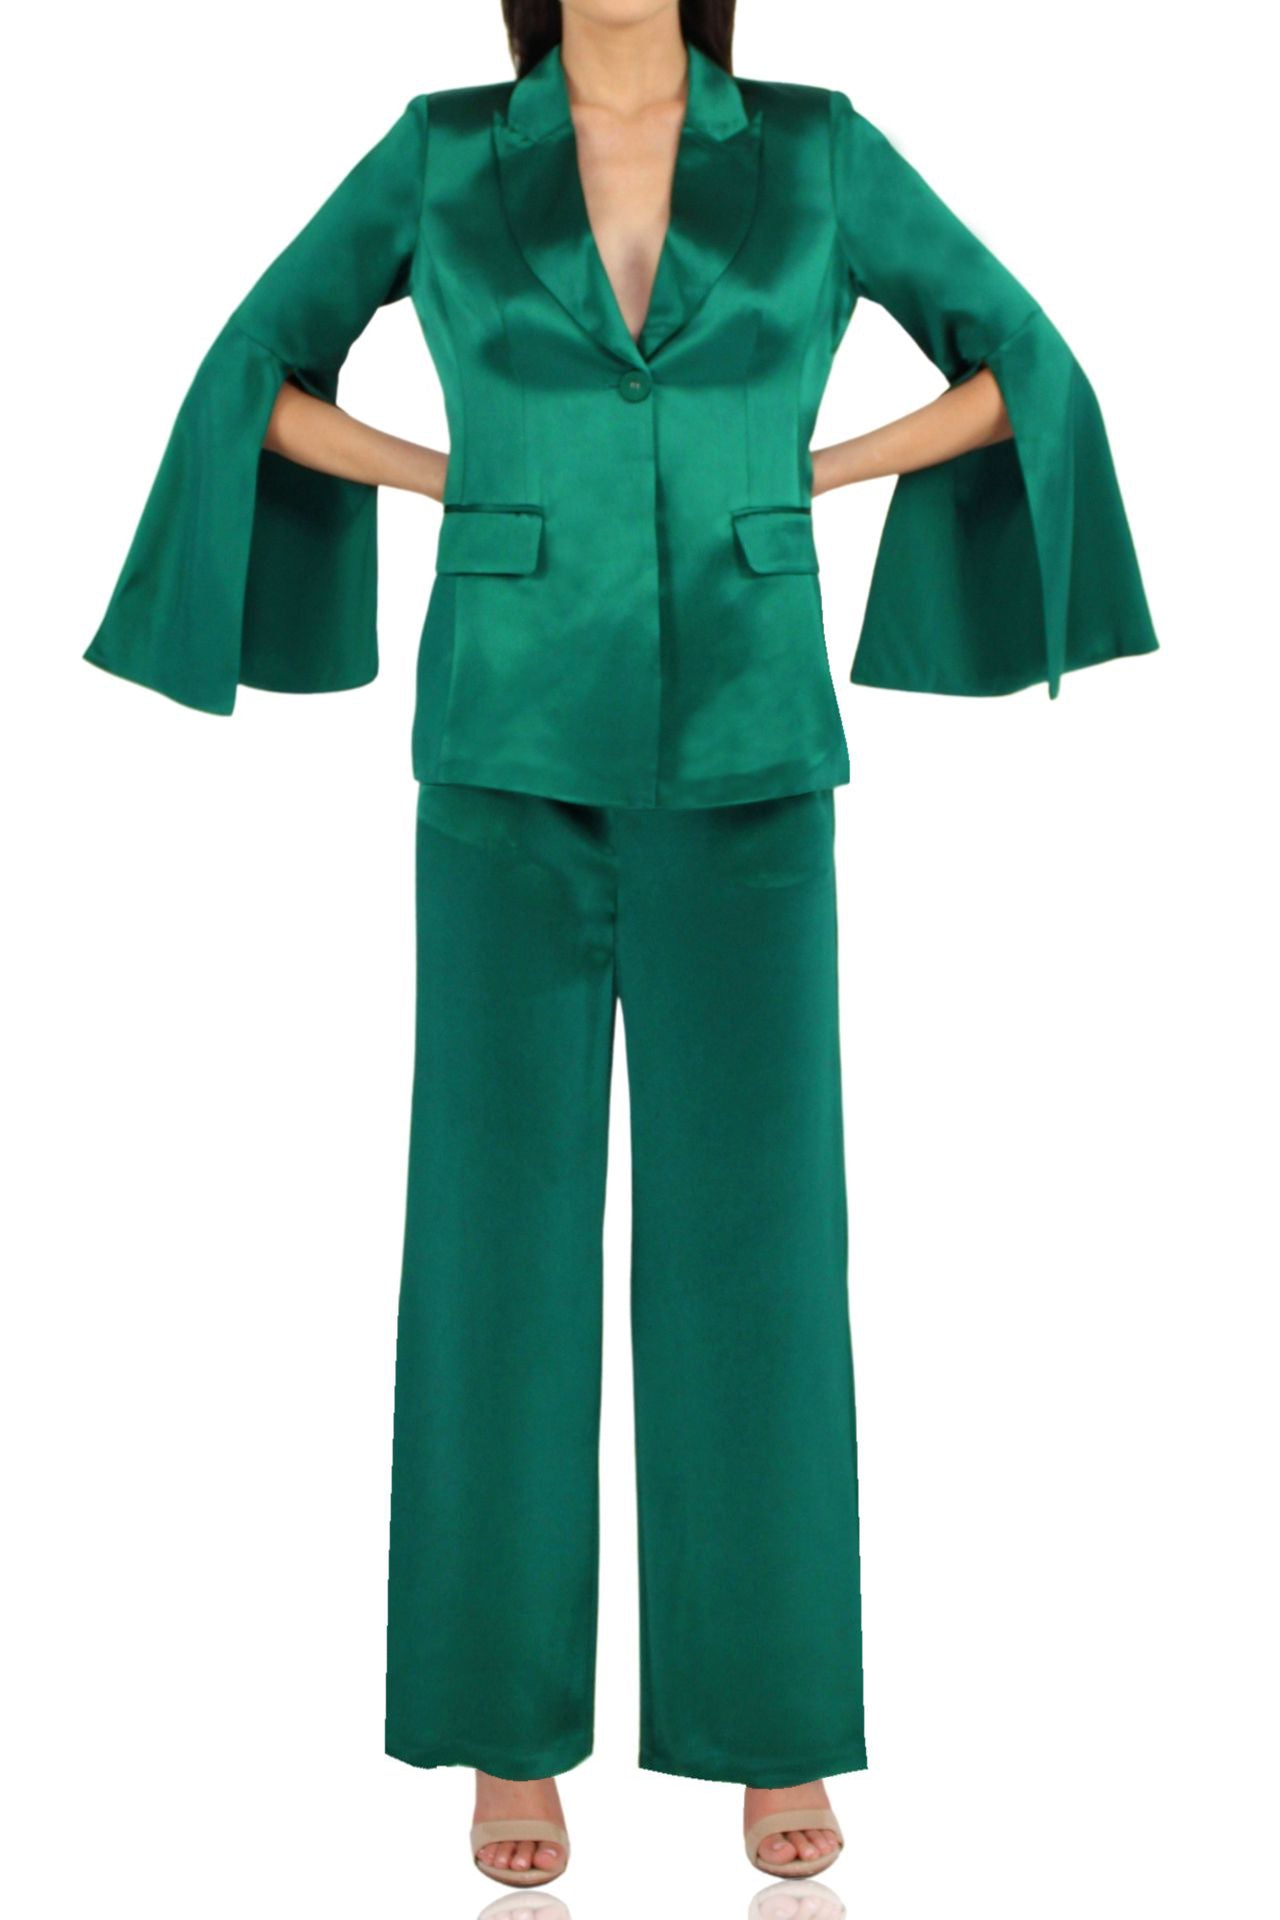 Women-Designer-Matching-Green-Suit-Kyle-Richard